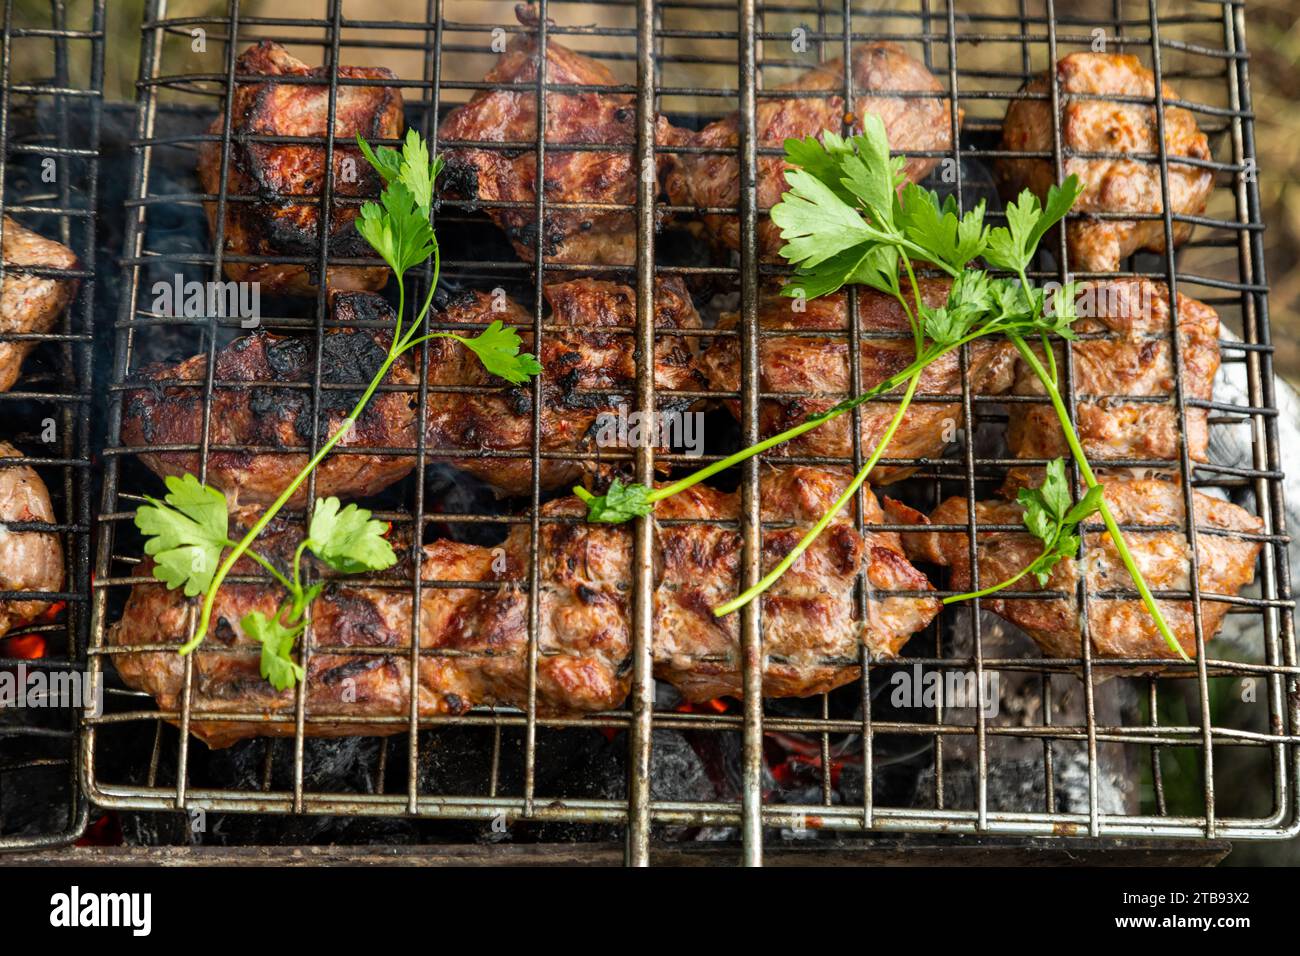 Grillen Sie das Rost mit Rinderfleisch auf einem Brazier mit brennender Holzkohle. Grillparty im Freien Stockfoto